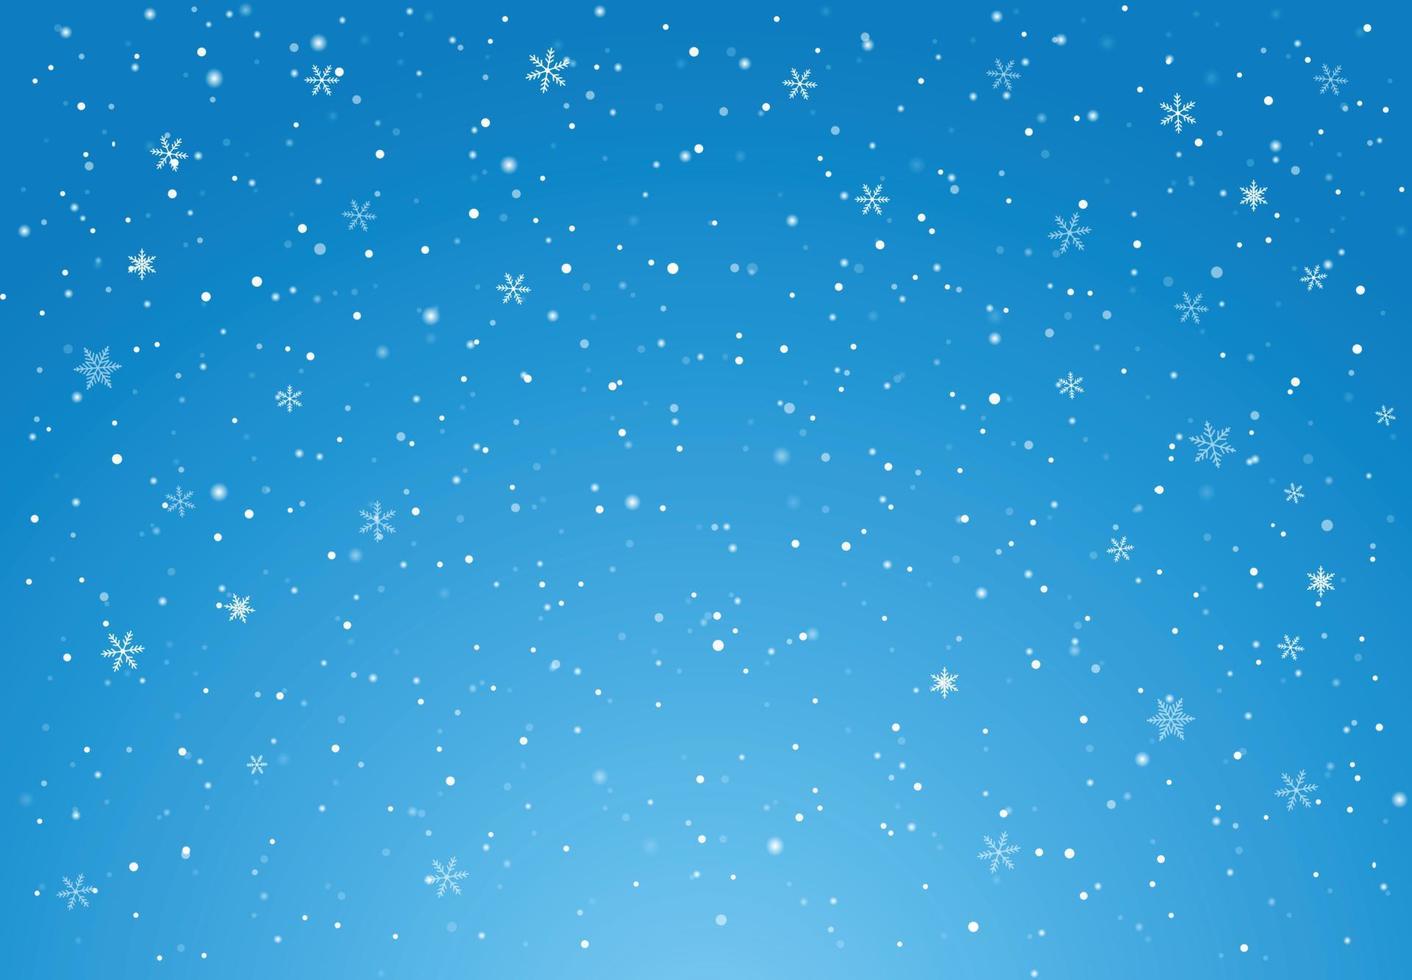 ilustração vetorial com neve caindo no fundo do céu azul do feliz natal e feliz ano novo vetor